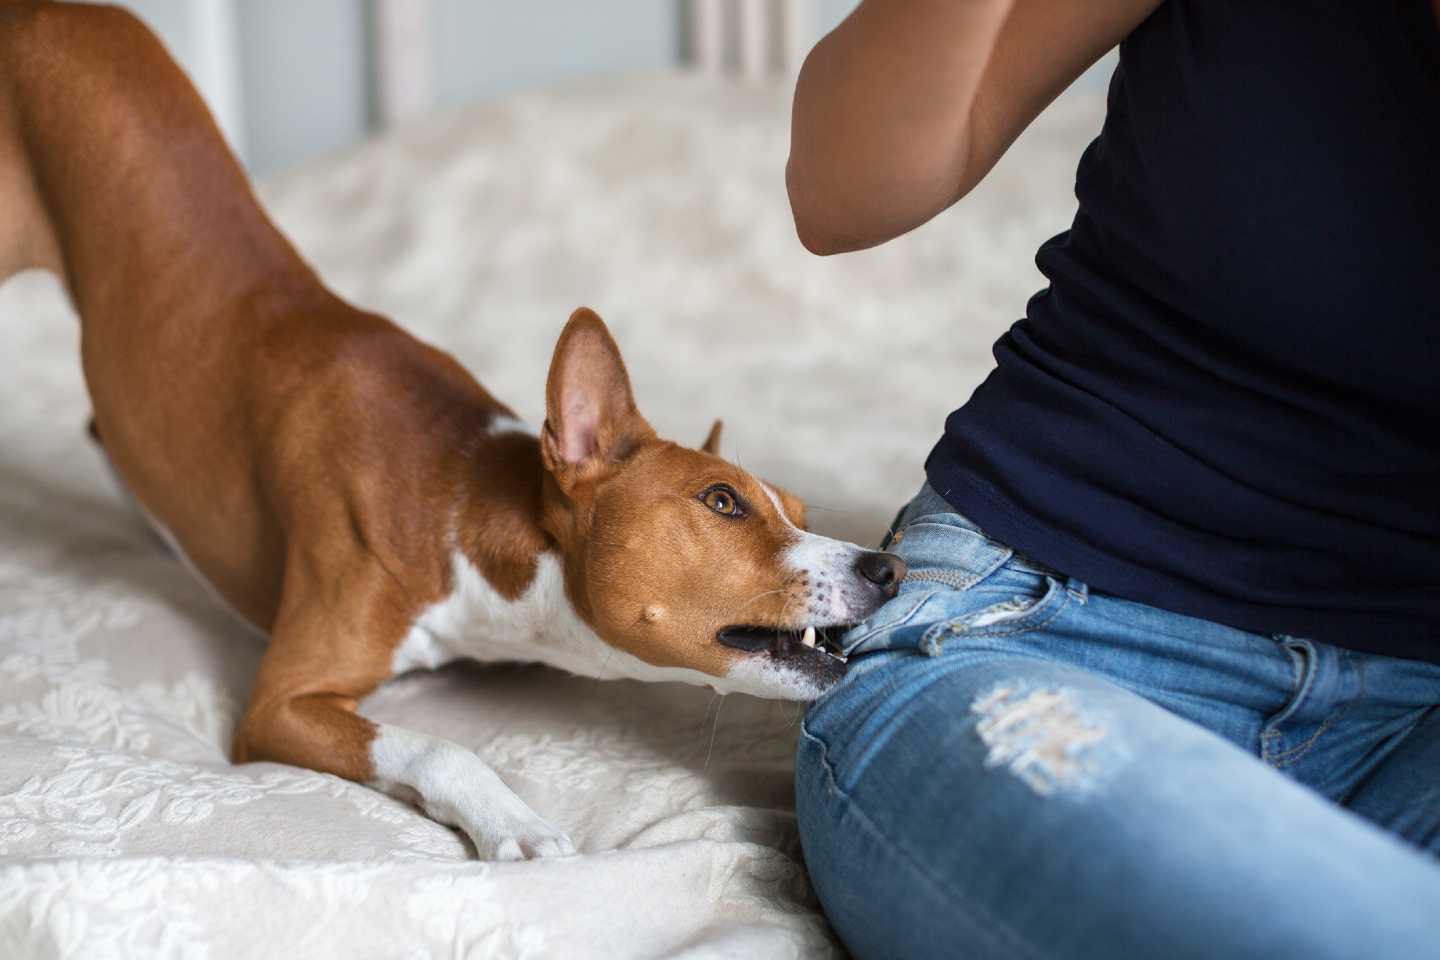 Kleiner Hund beißt Frauchen spielerisch an der Hüfte in die Jeans.